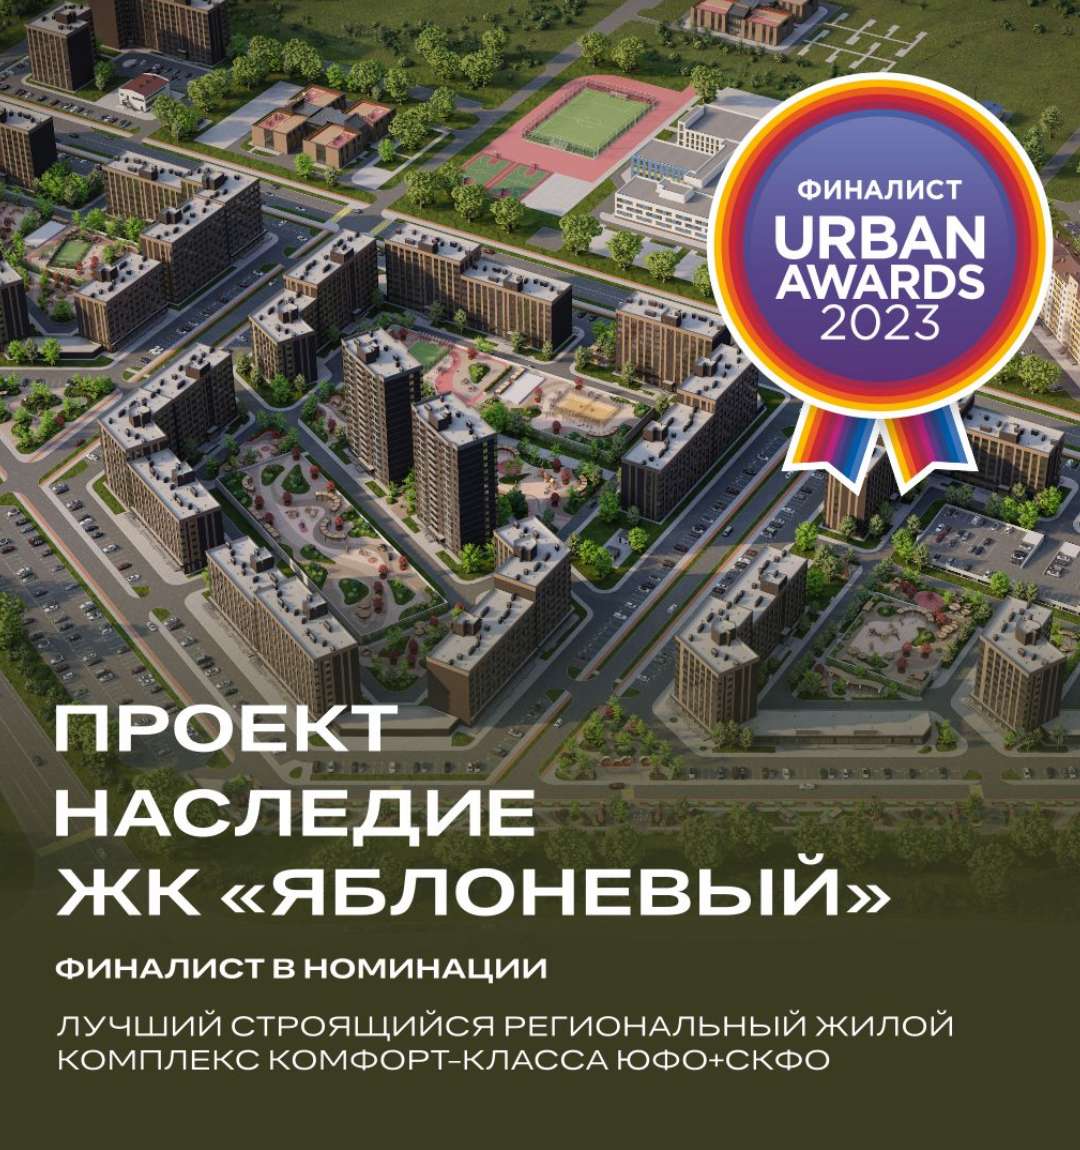 ЖК «Яблоневый» вышел в финал премии Urban Awards 2023 